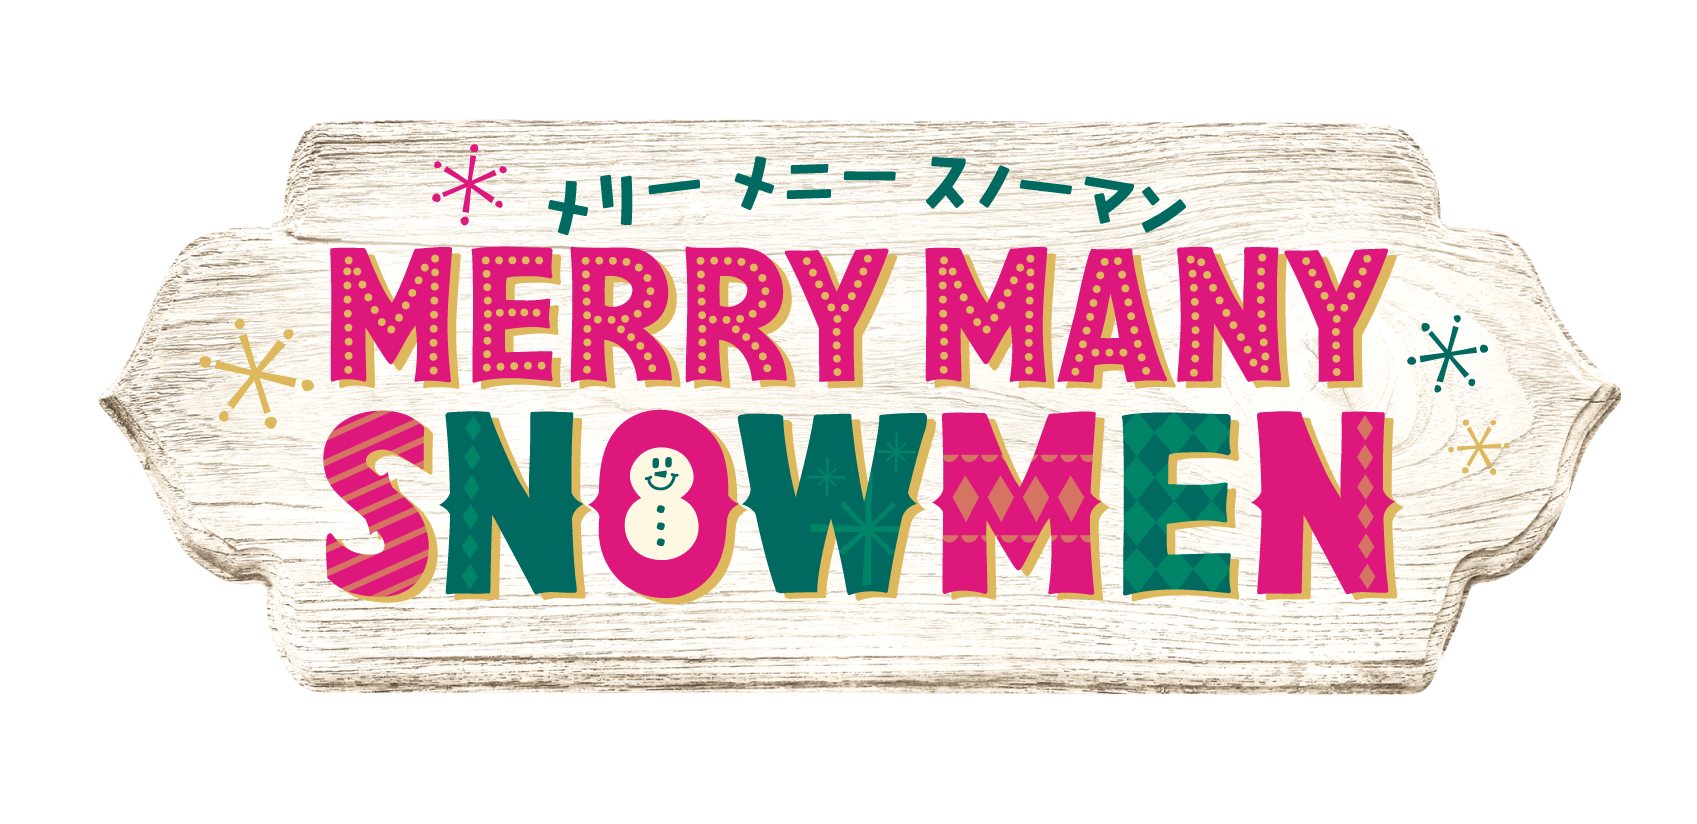 たくさんの雪だるまがサーティワンに登場 Merry Many Snowmen メリーメニースノーマン キャンペーン B R サーティワン アイスクリーム株式会社のプレスリリース